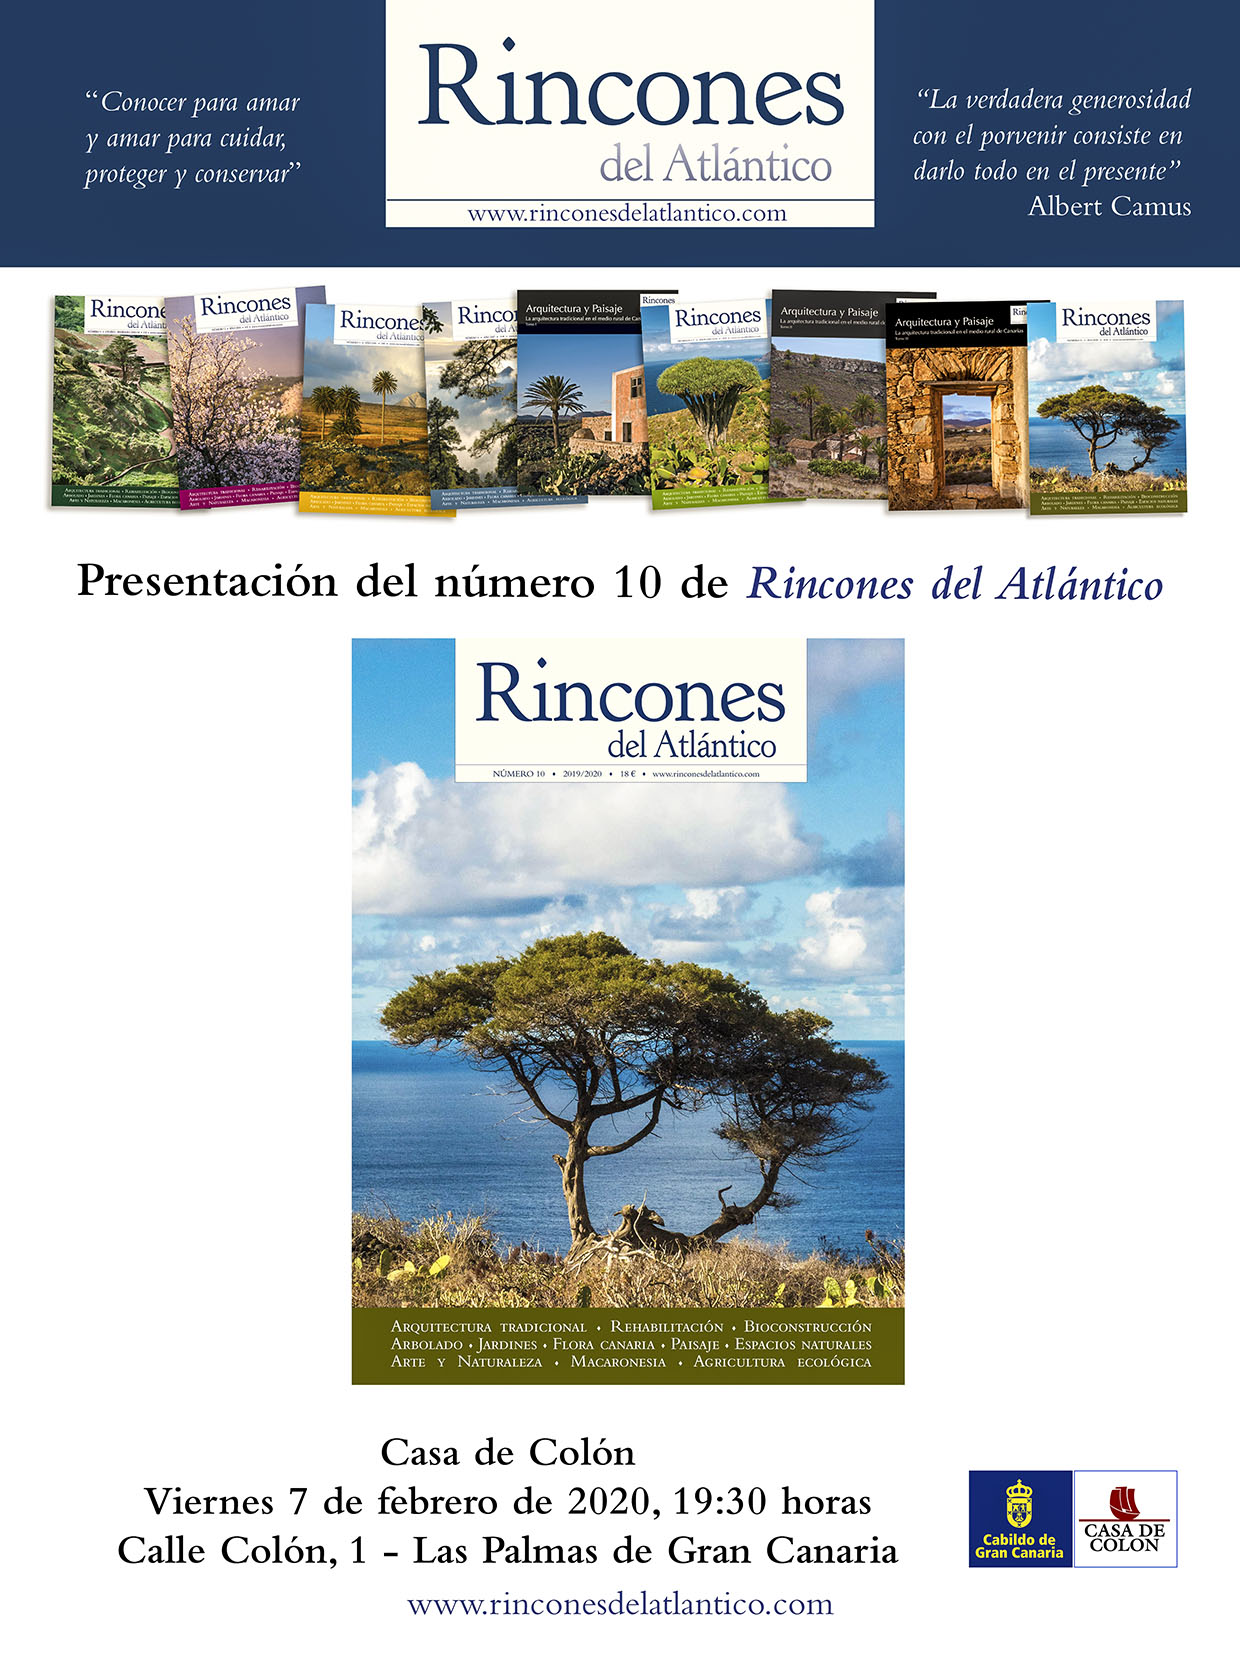 Presentación del nuevo número de Rincones del Atlántico en la Casa de Colón, Las Palmas de Gran Canaria